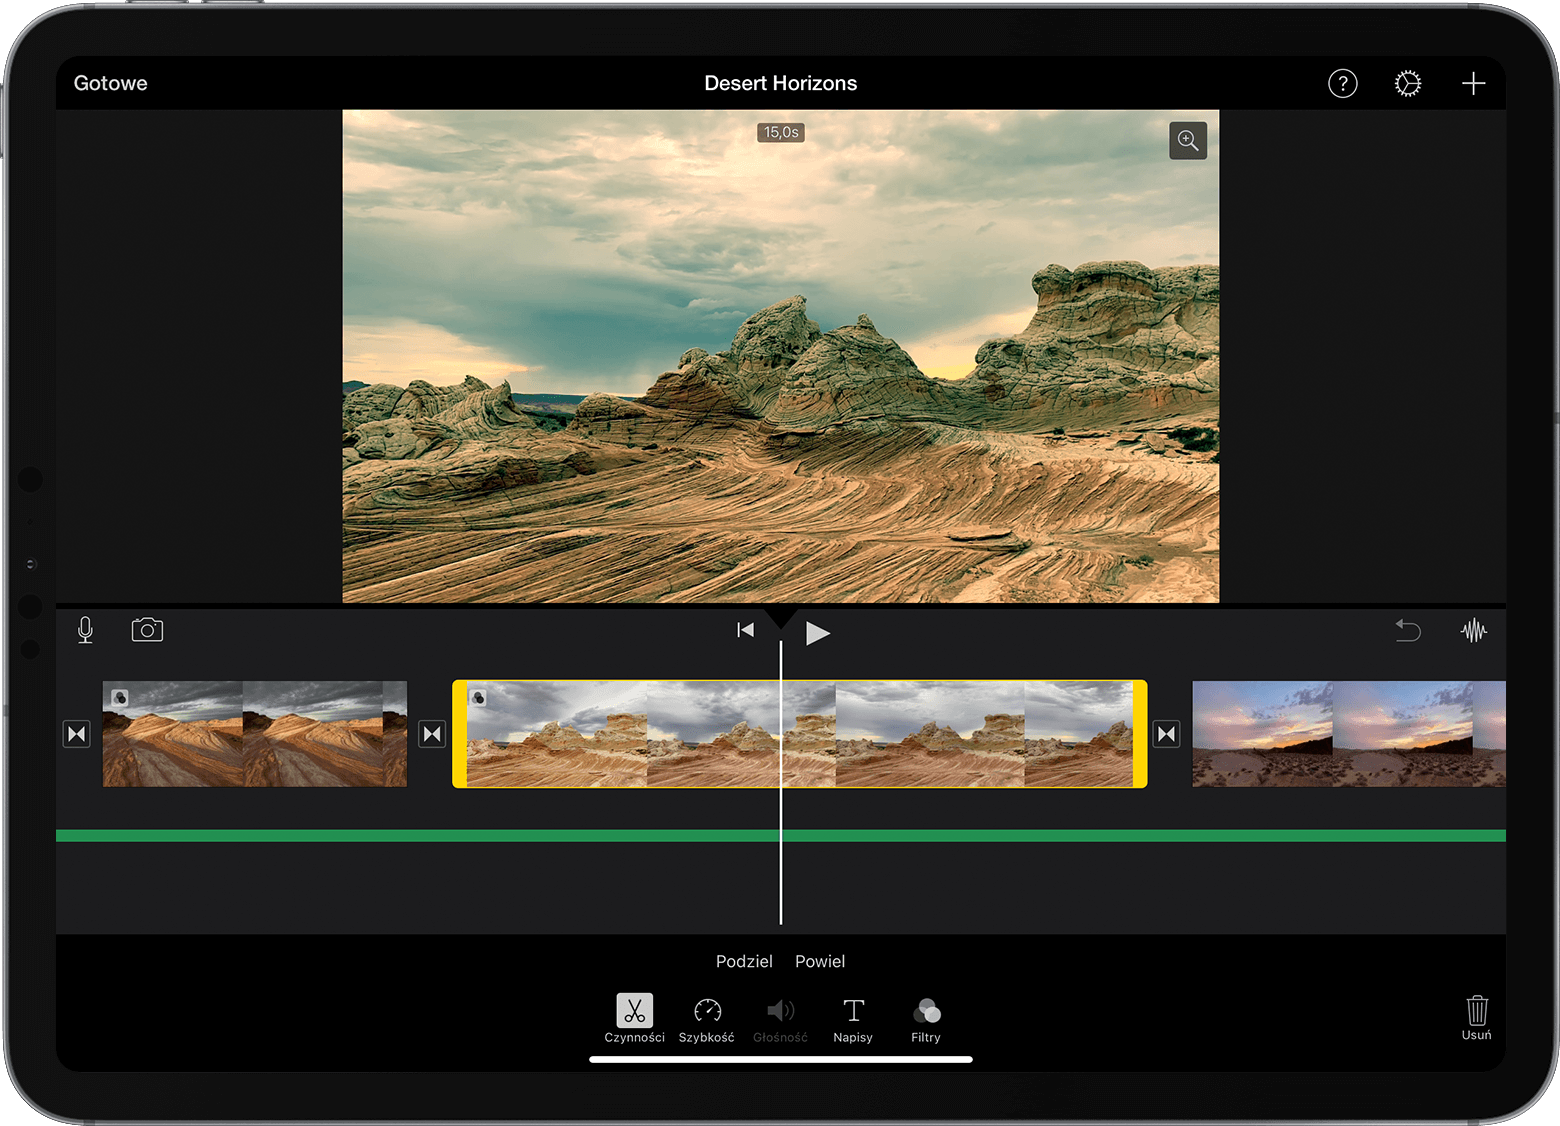 Projekt aplikacji iMovie na iPadzie otwarty na klipie wideo zaznaczonym na linii czasowej